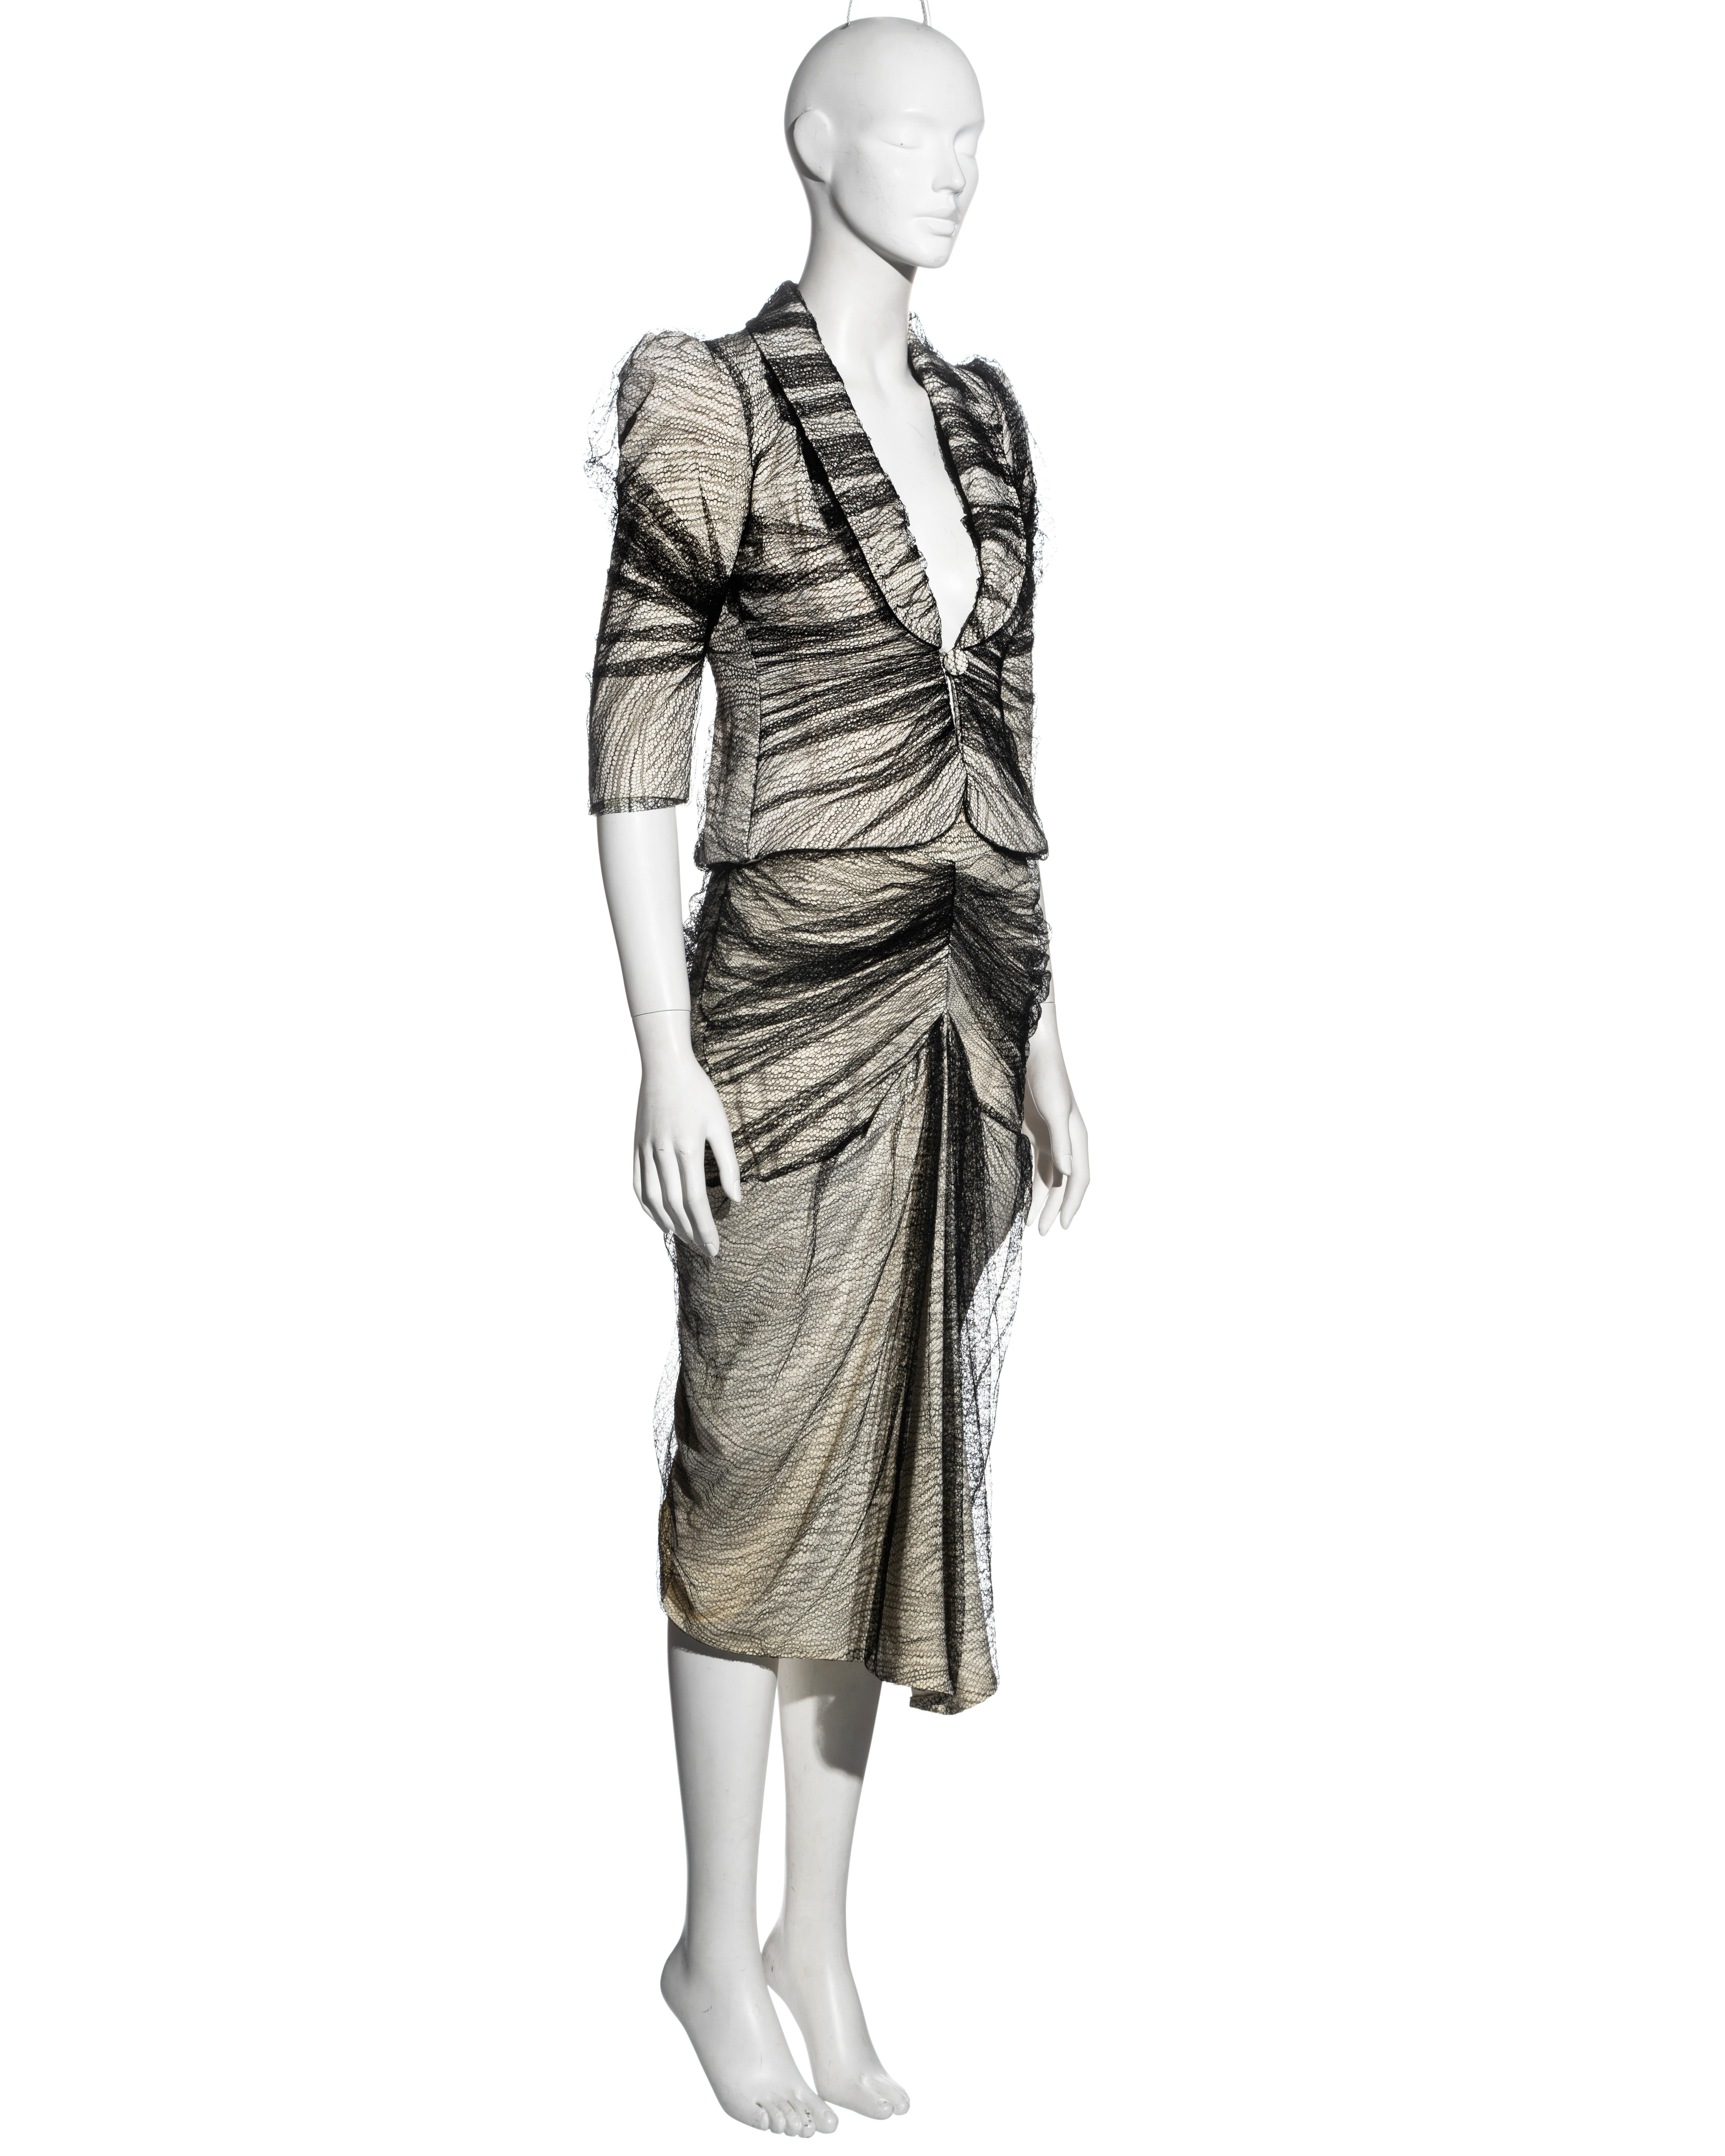 Gray Alexander McQueen 'Sarabande' skirt suit, ss 2007